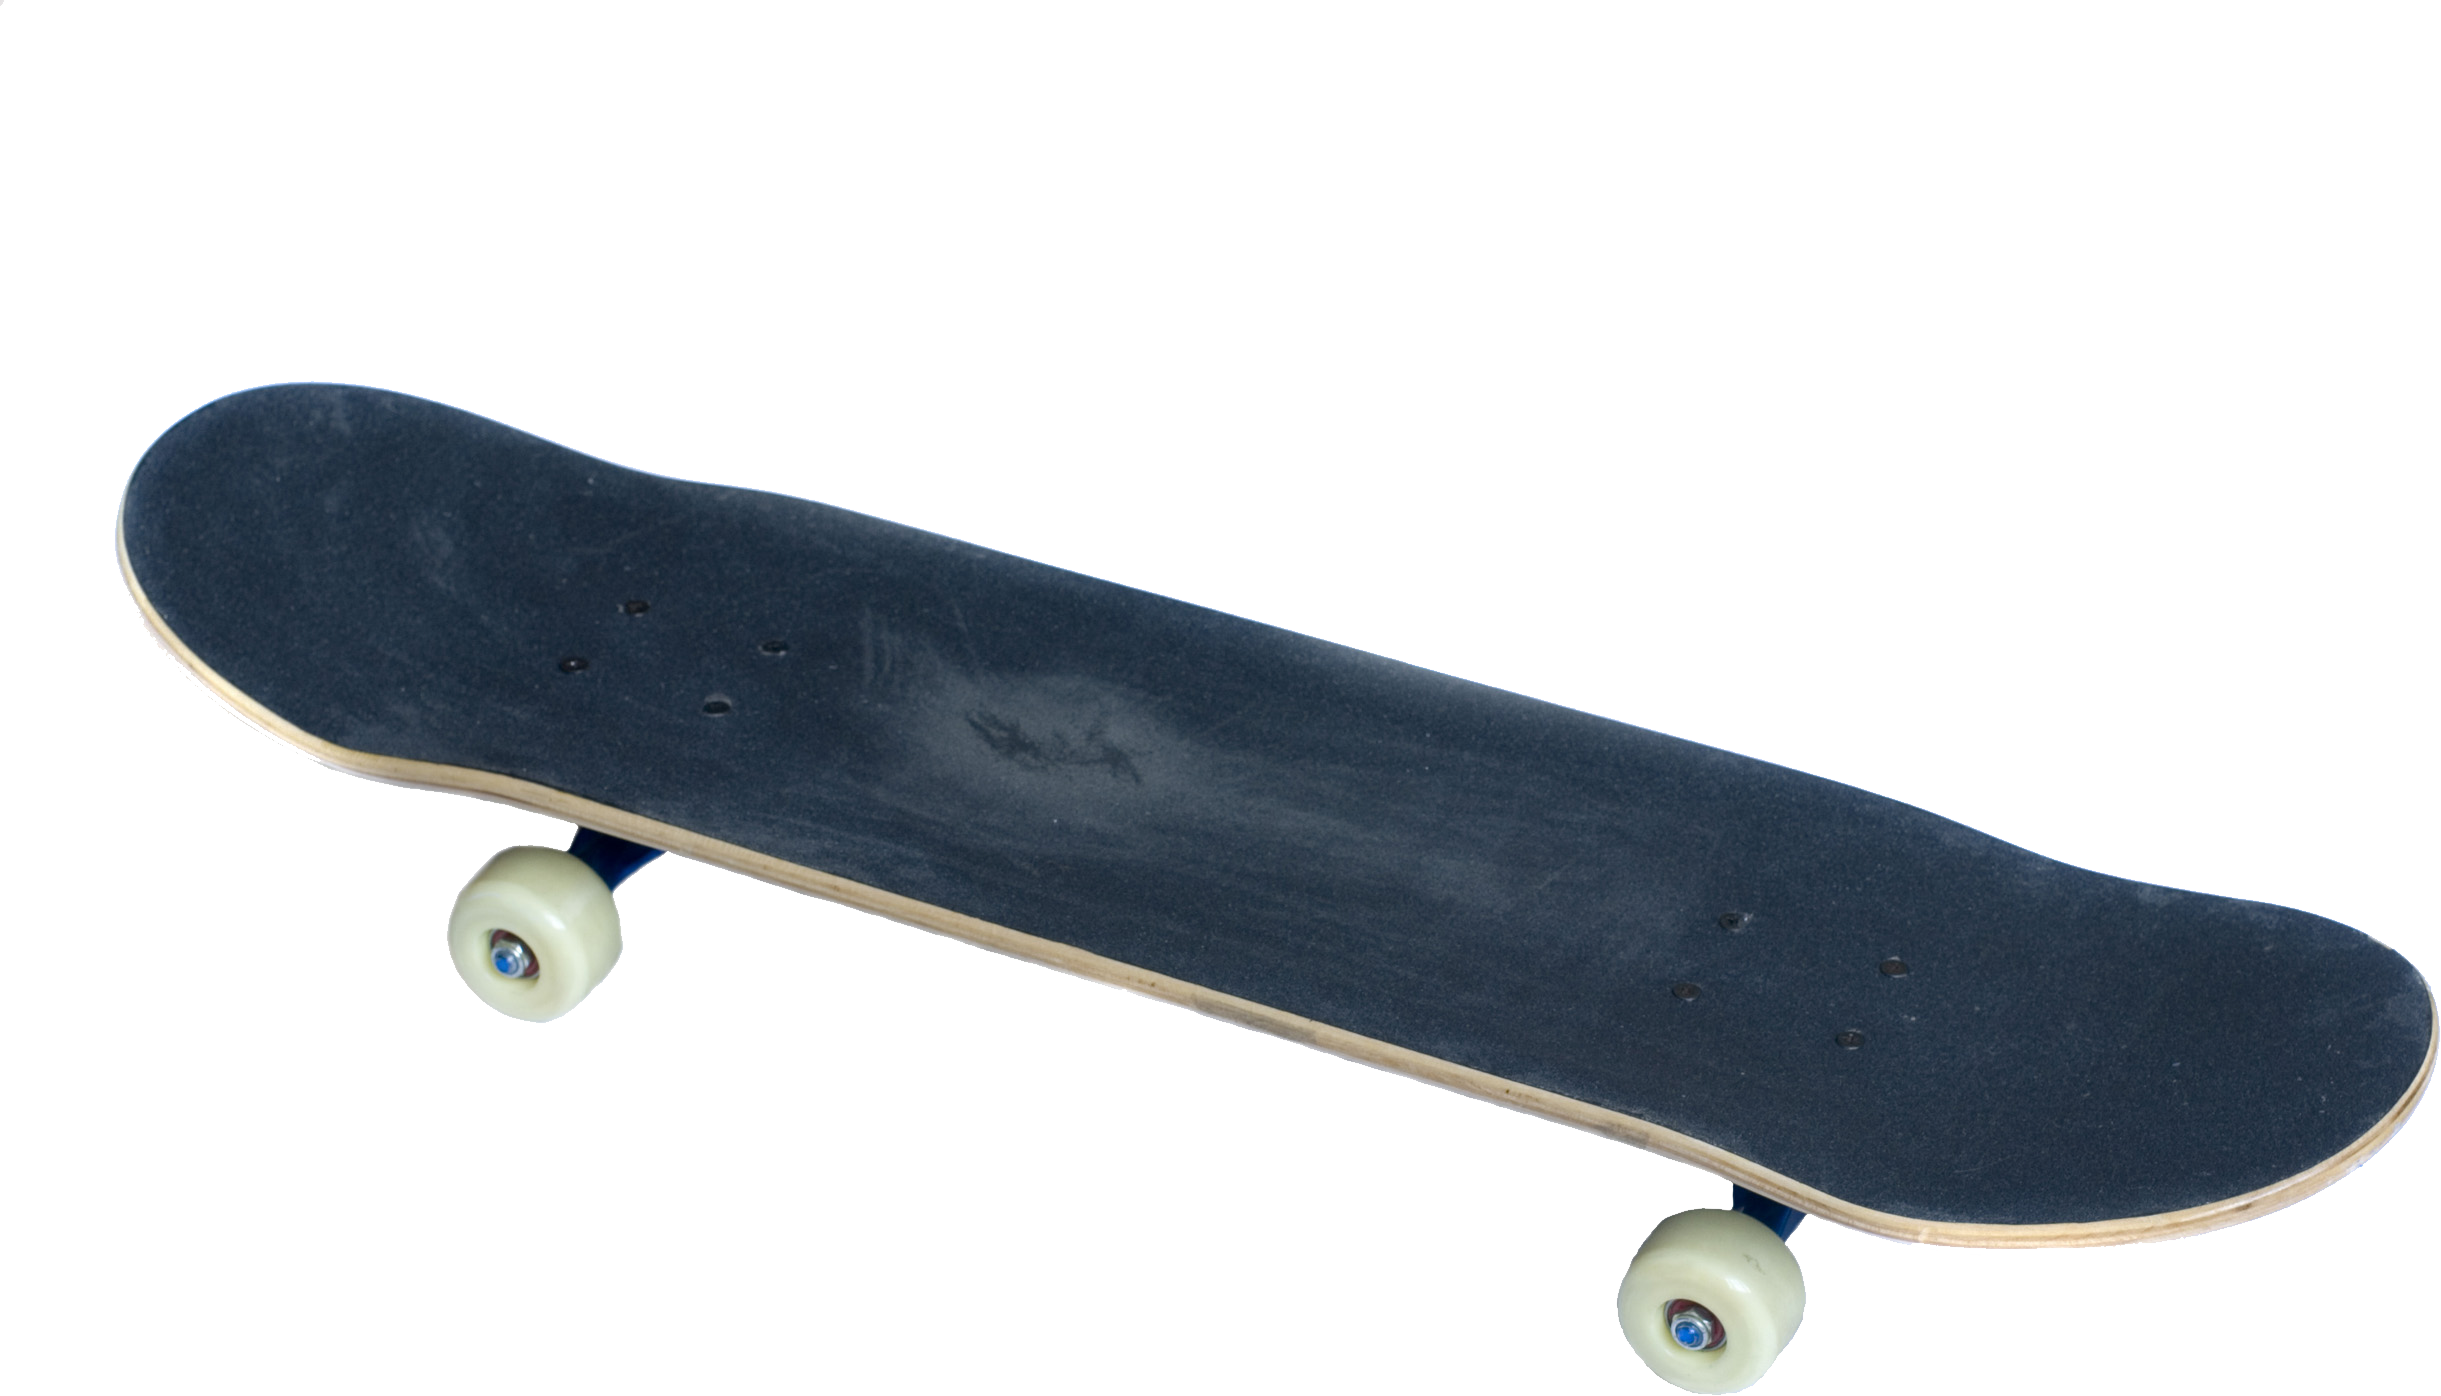 Skateboard PNG image